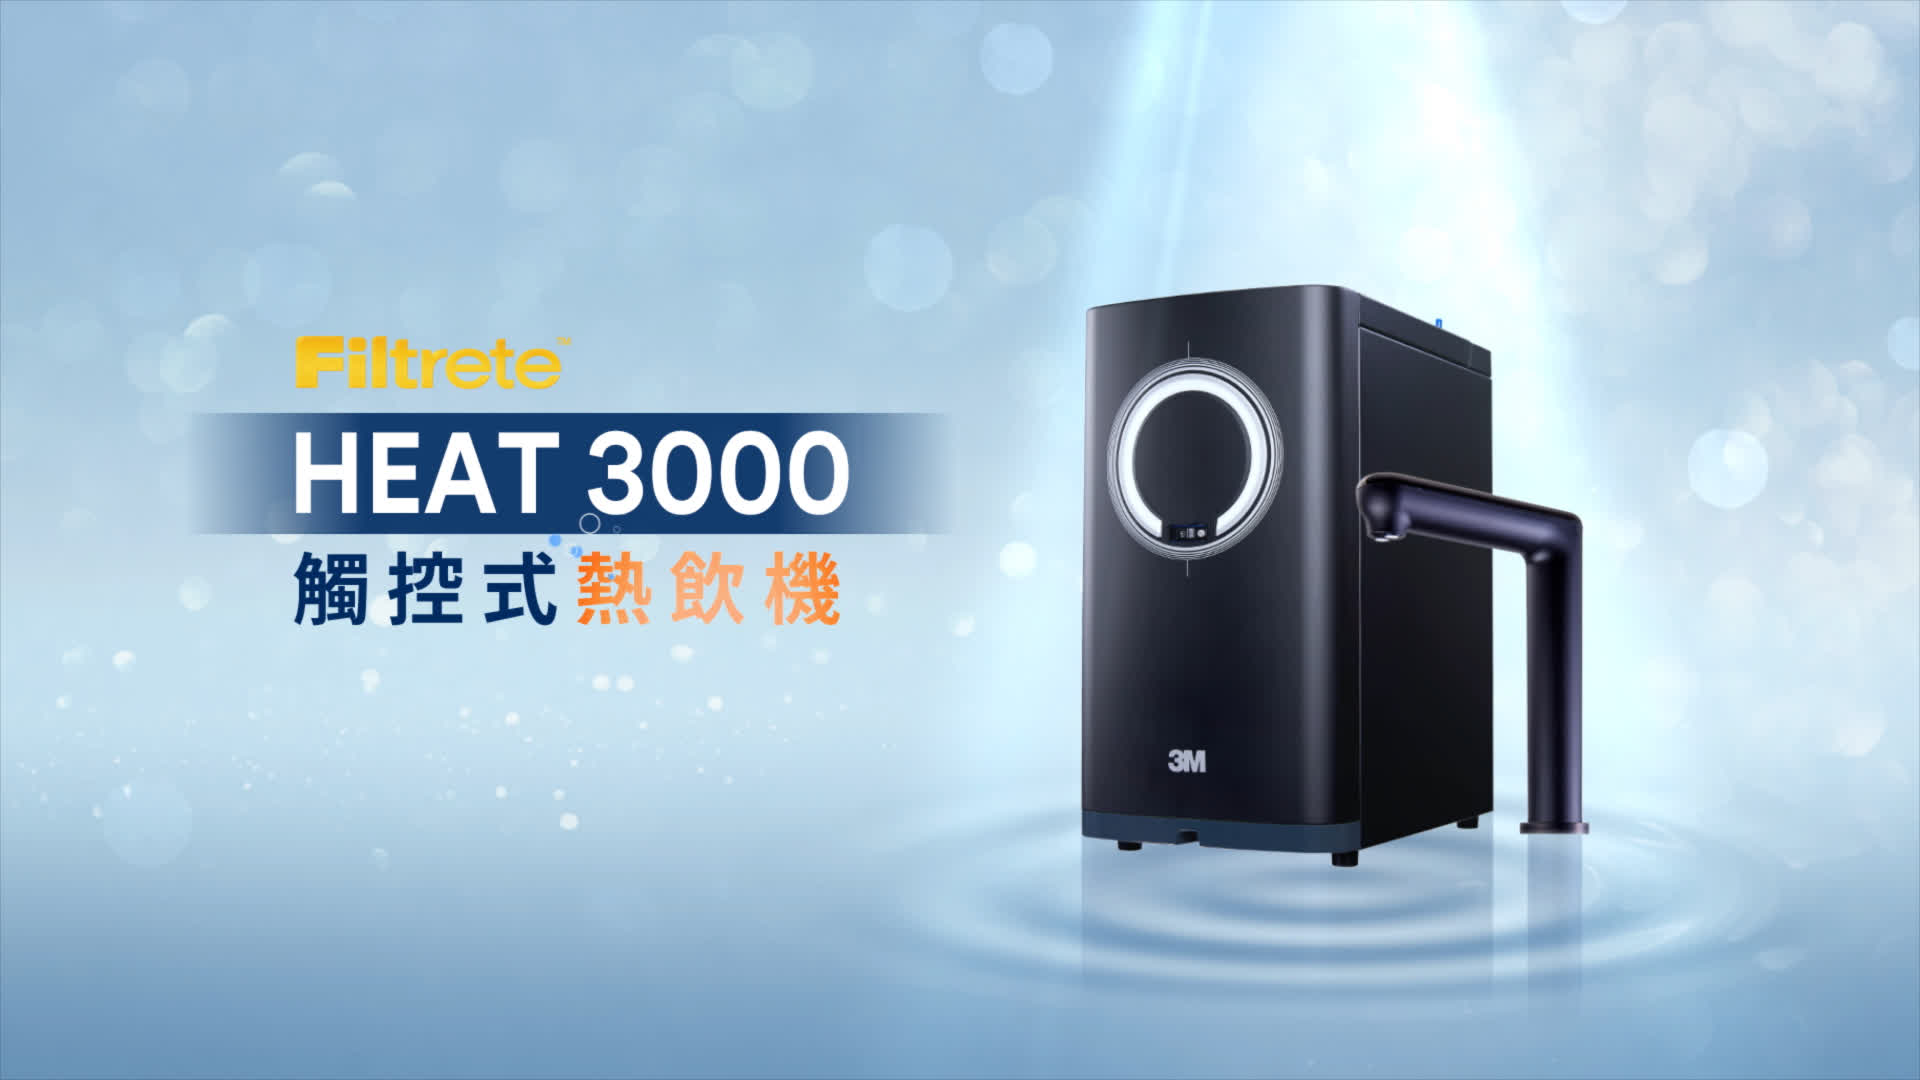 HEAT3000變頻觸控熱飲機(單機版)